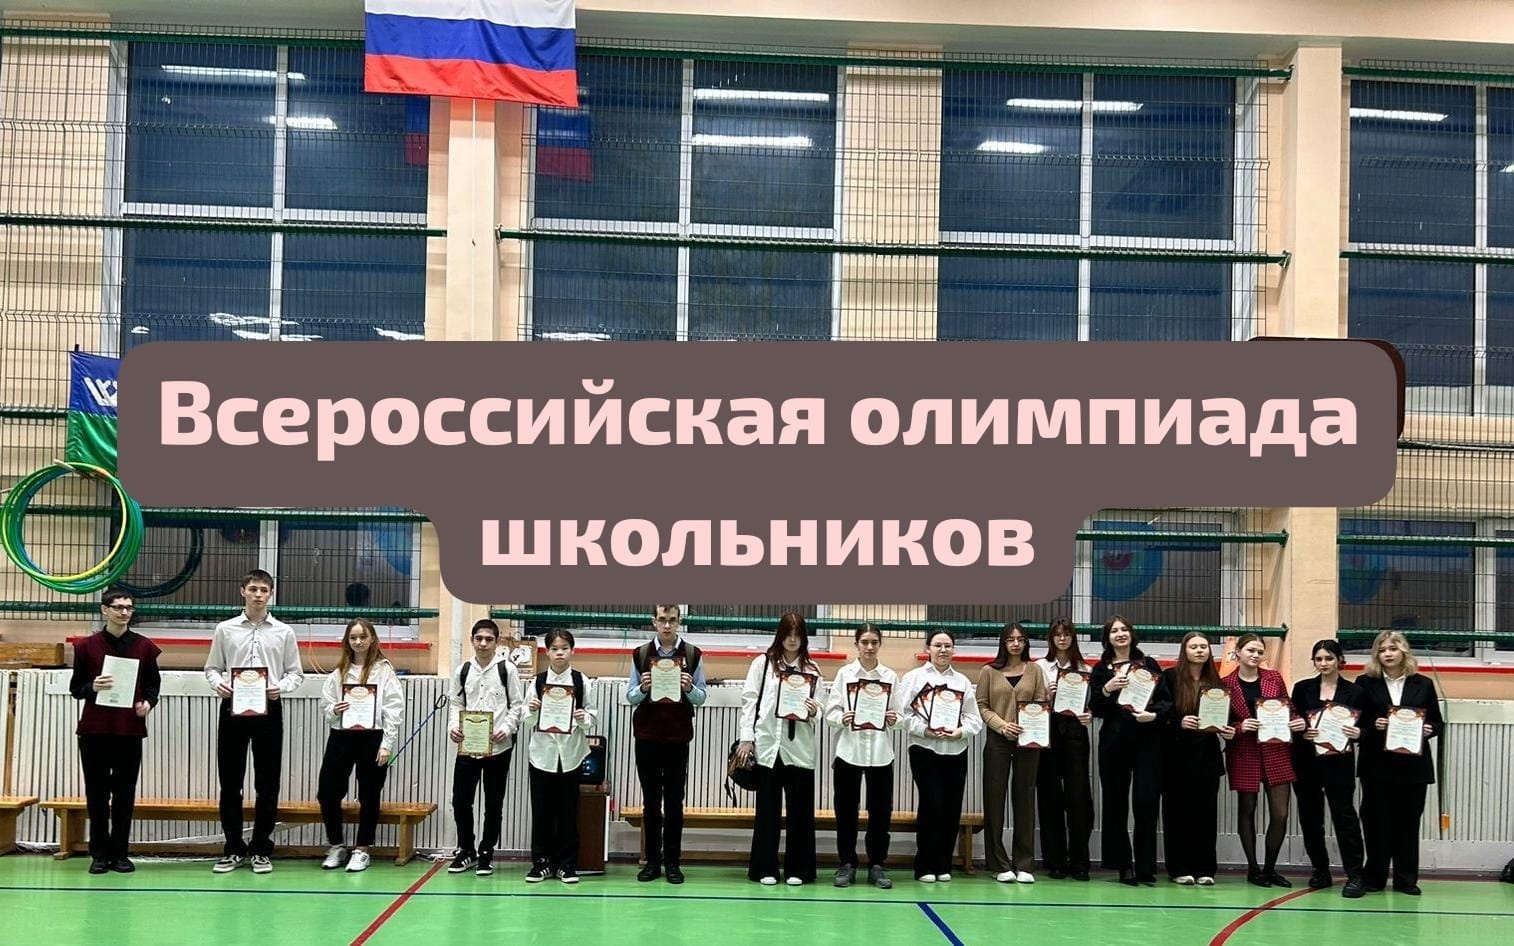 Победители и призеры всероссийской олимпиады школьников.